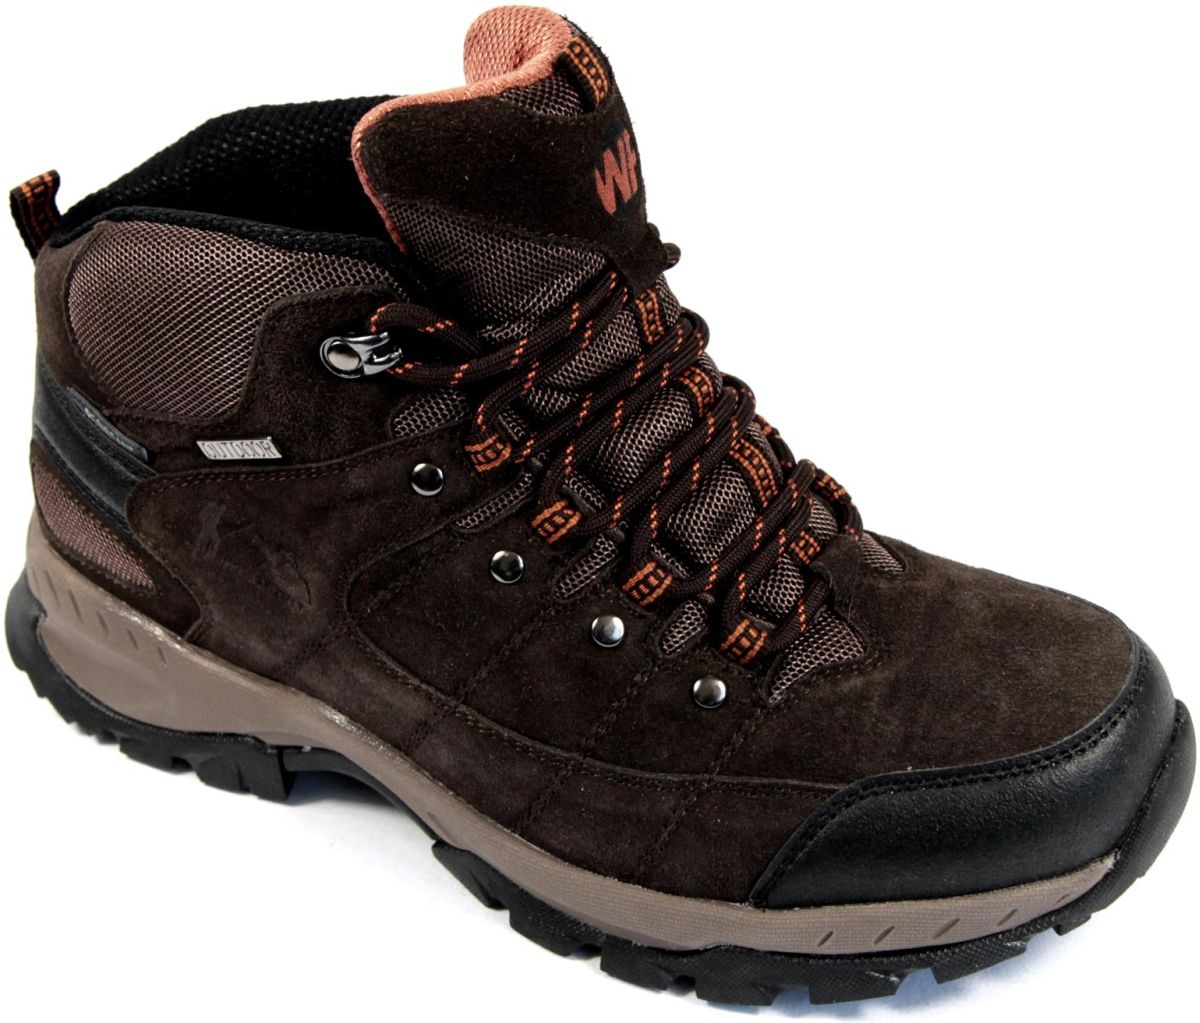 VASA - Men’s trekking shoes